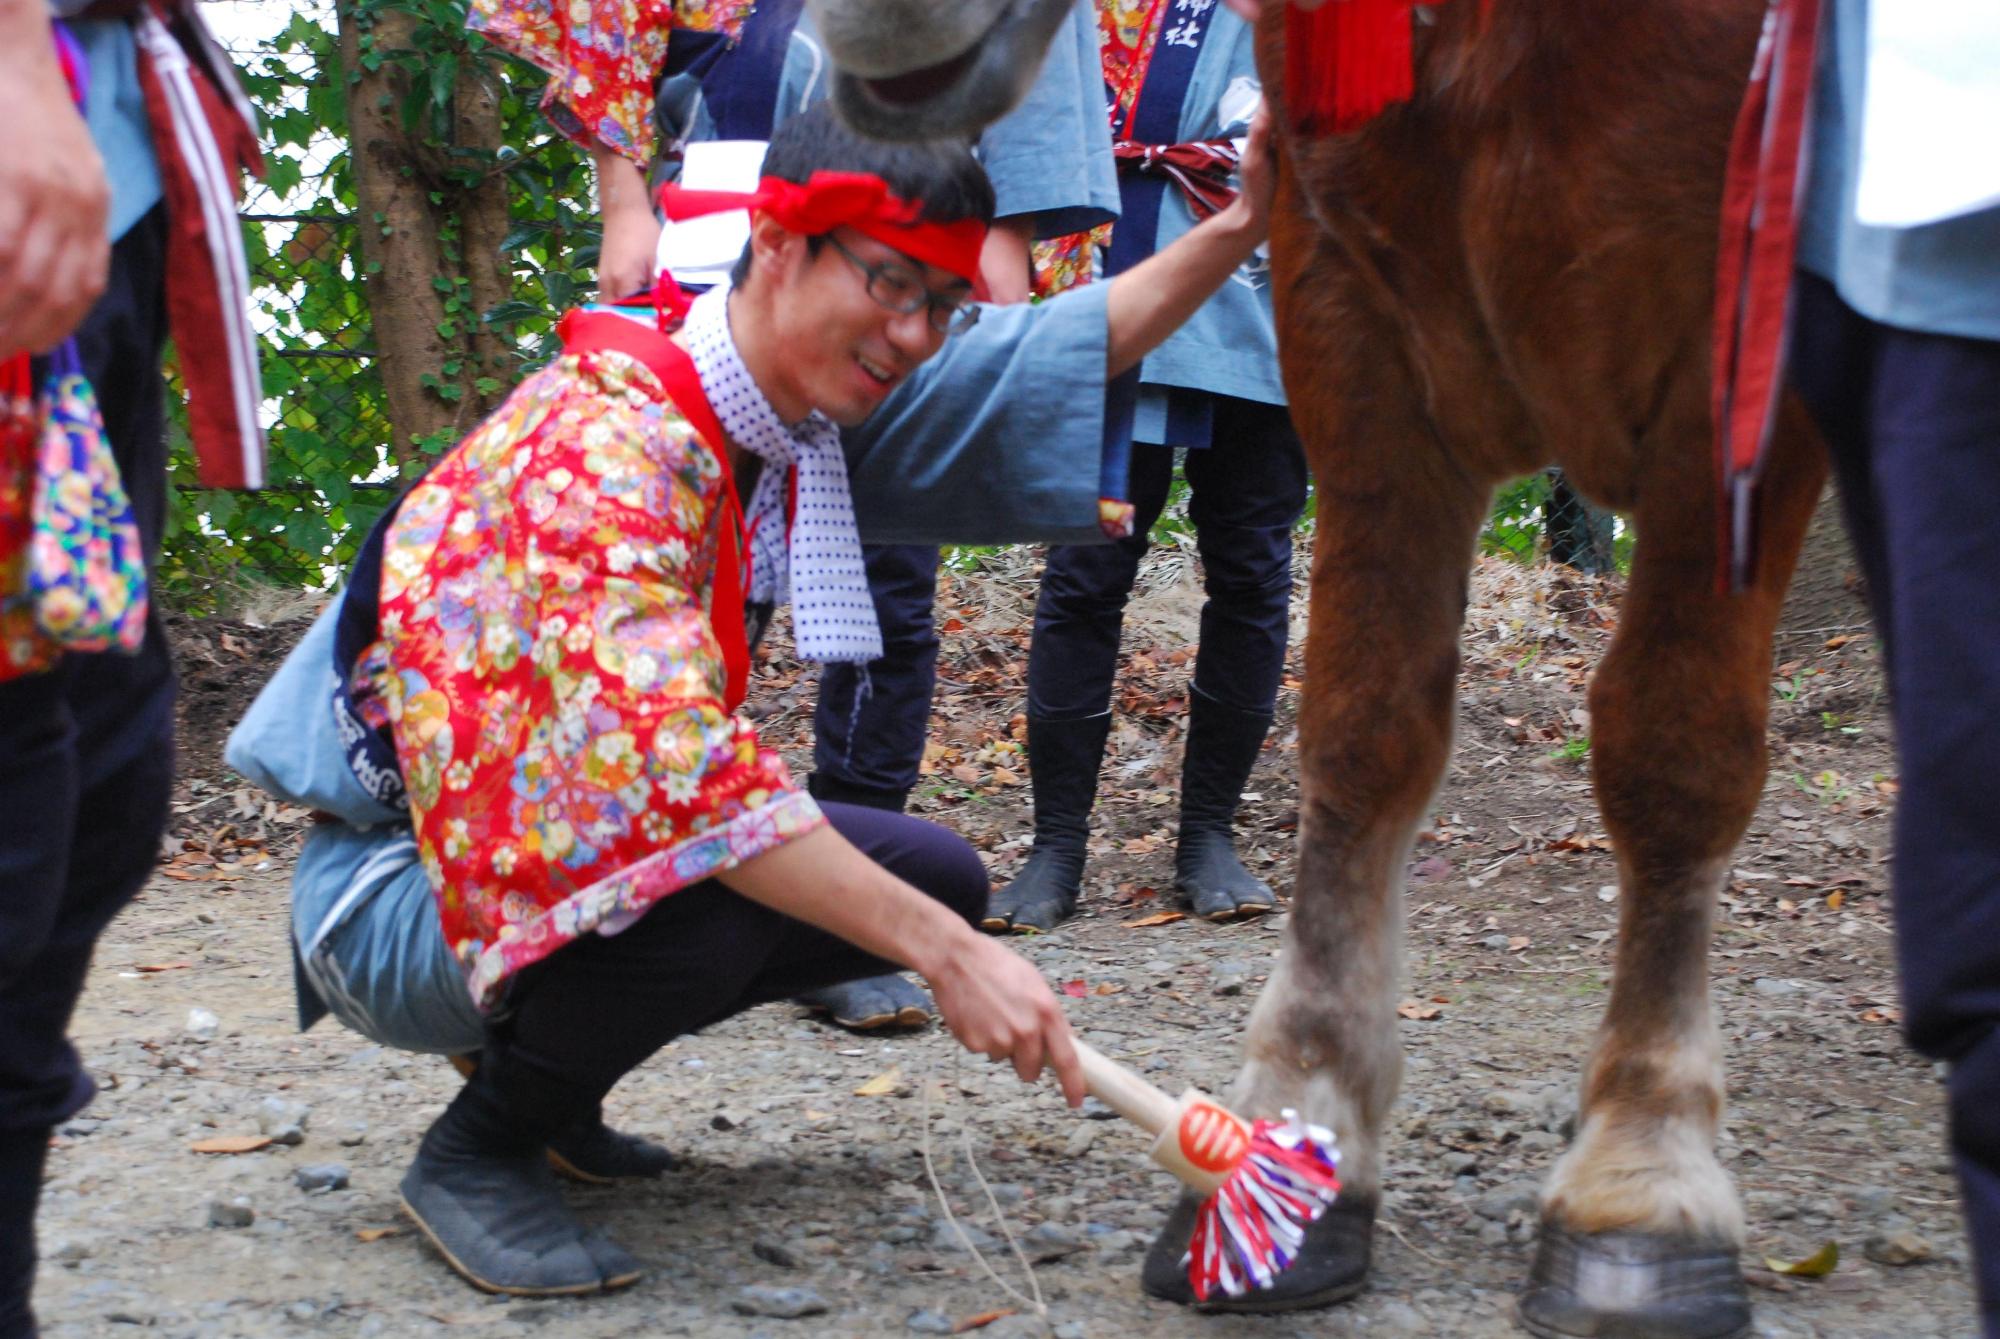 頭に赤い鉢巻を巻き花柄の着物を上にまとった男性が、爪きりの道具を使って馬の蹄を触っている儀式の様子の写真